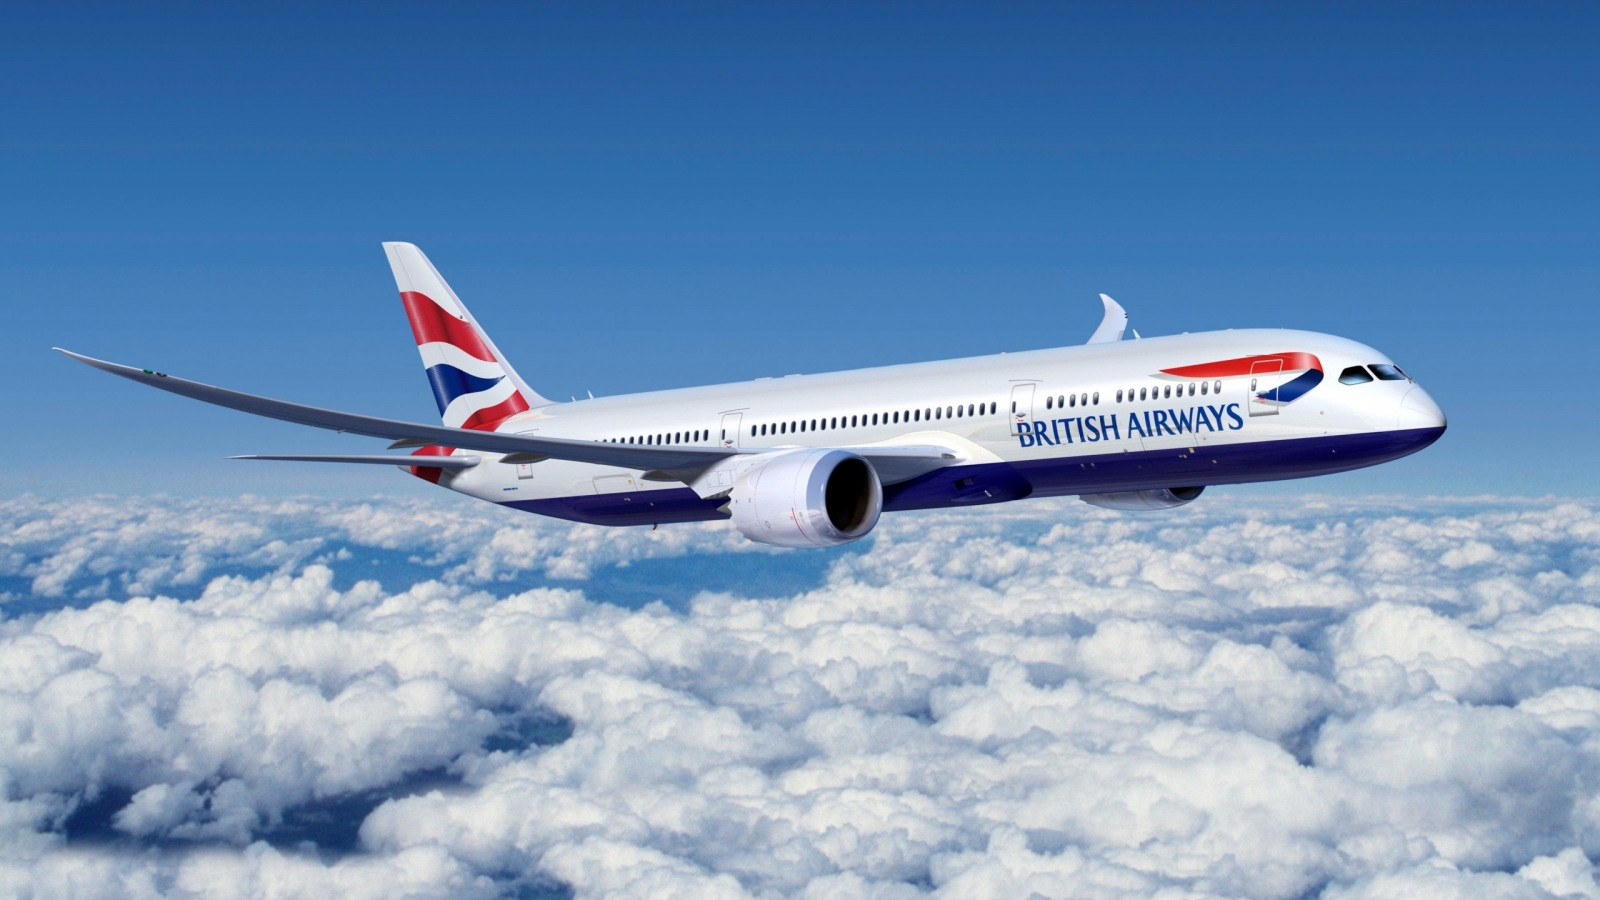 Boeing 777 British Airways for 1600 x 900 HDTV resolution